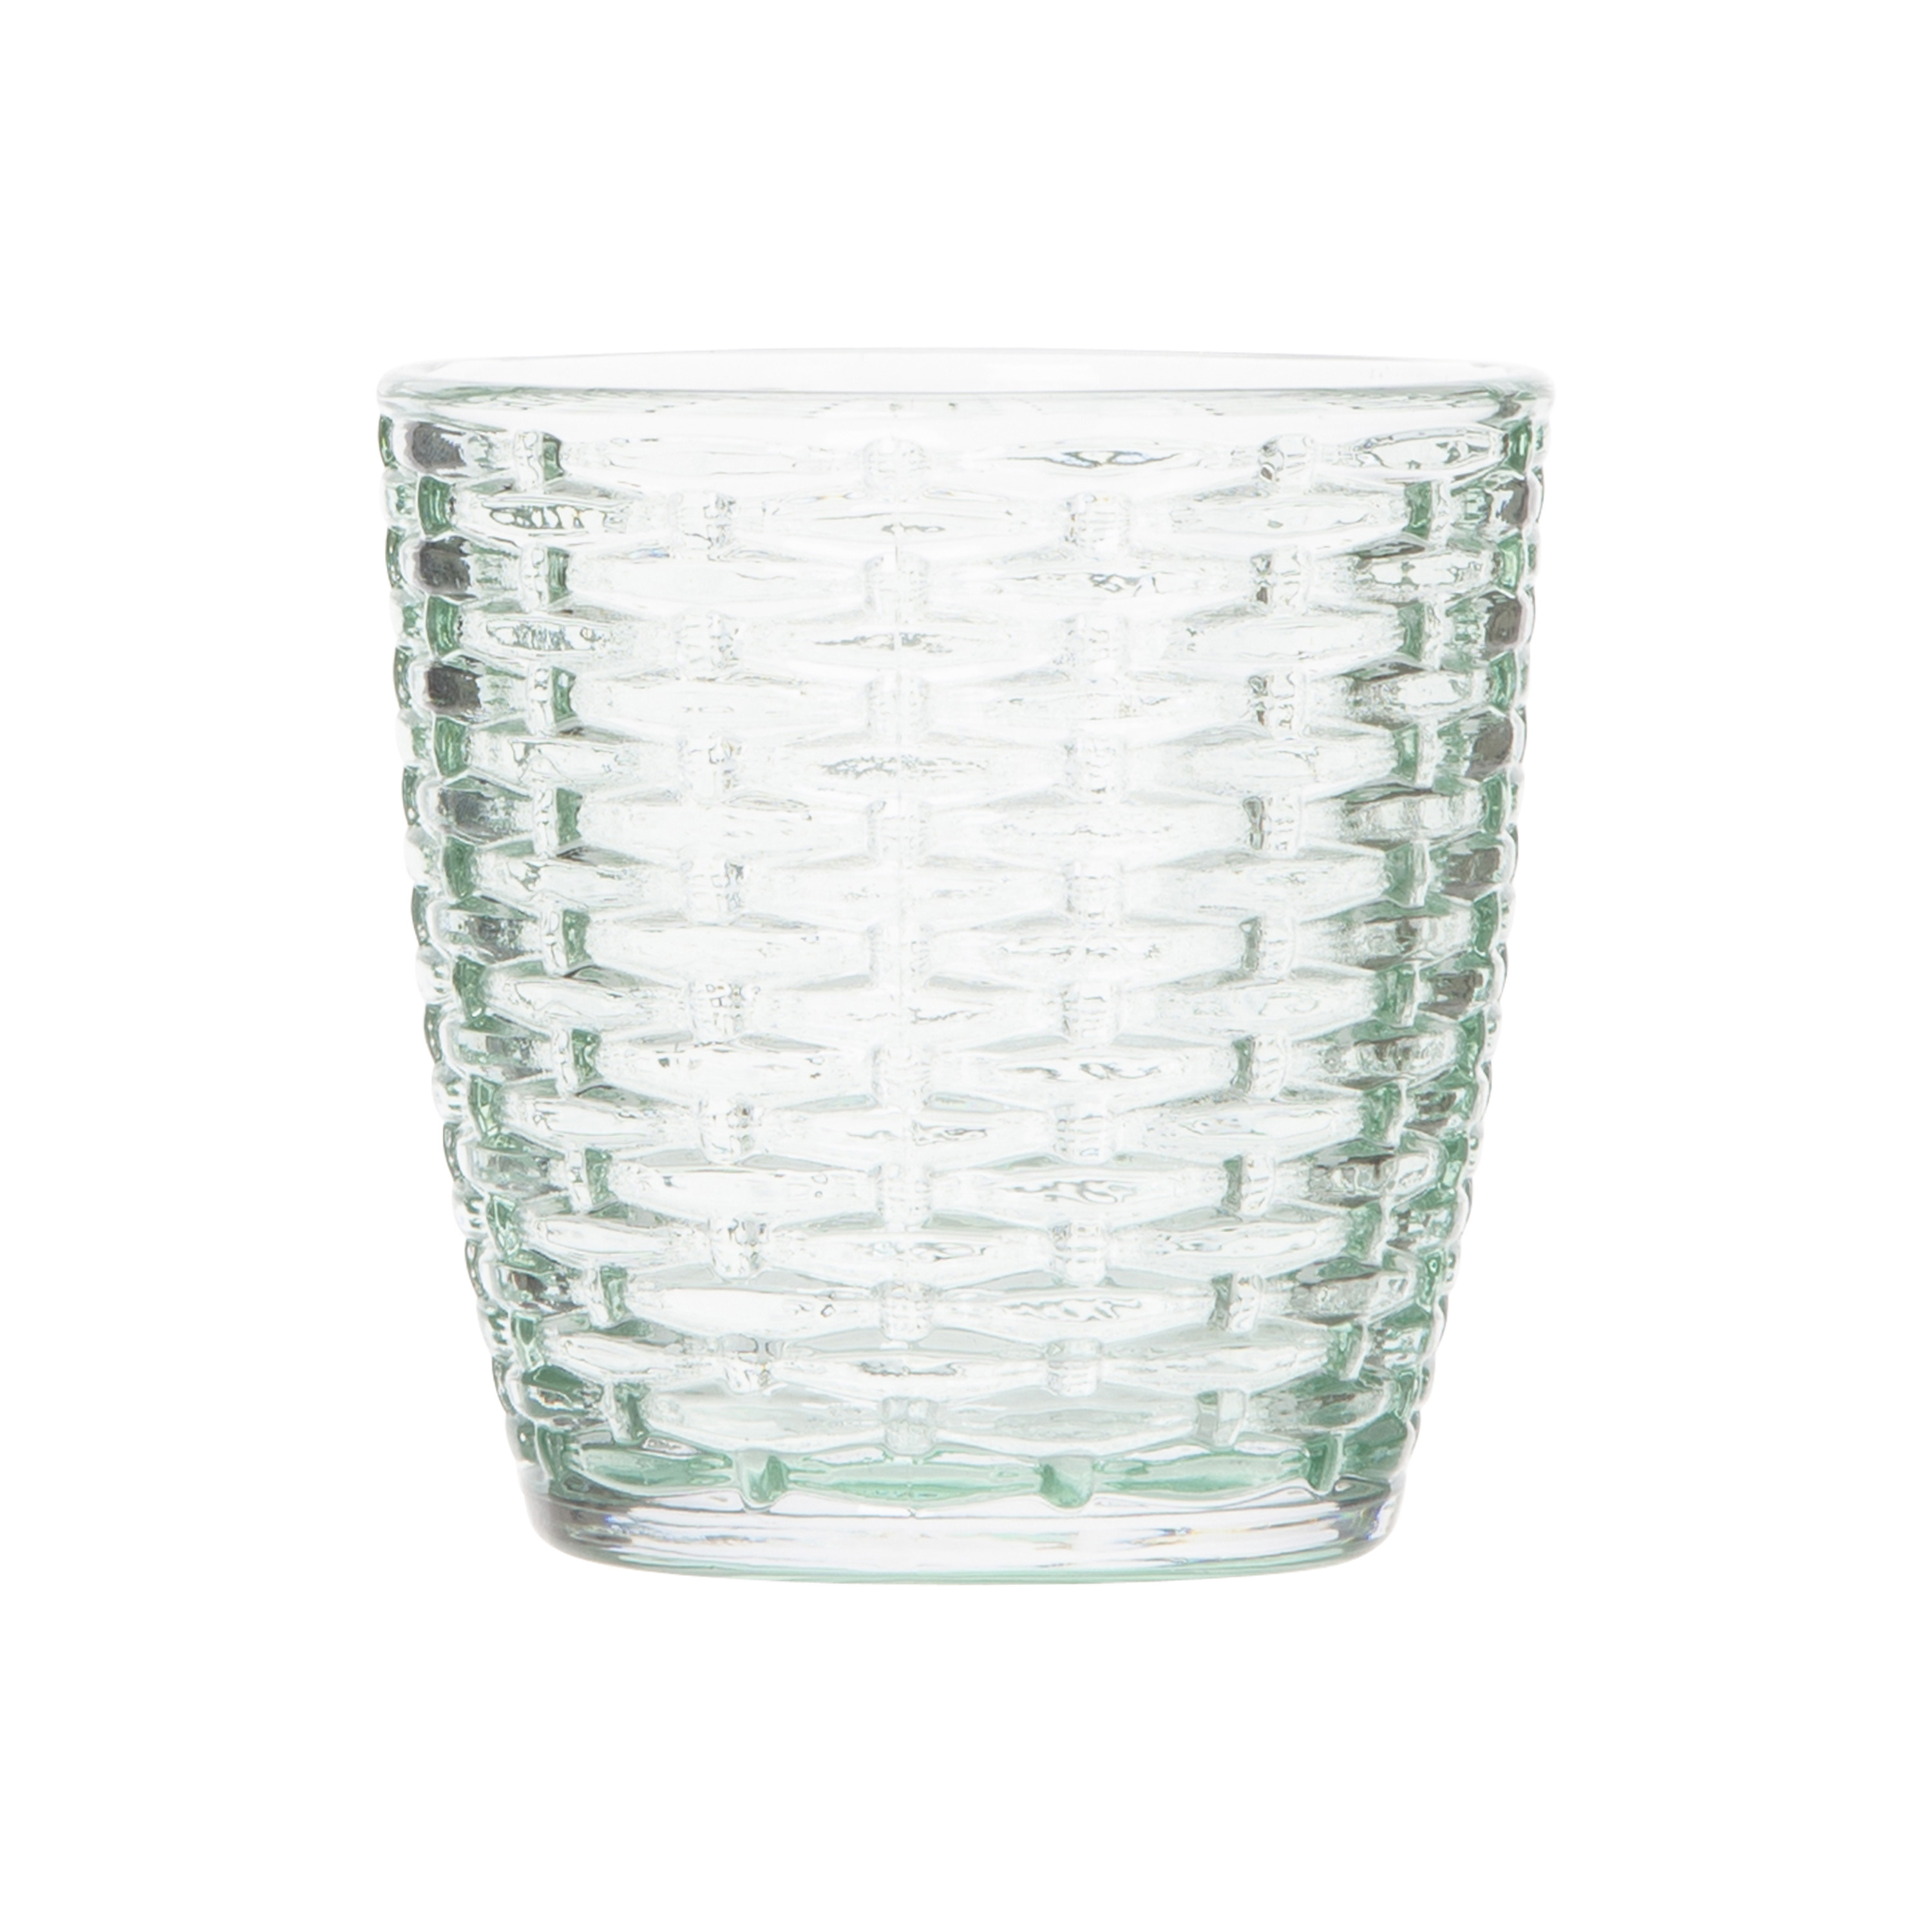 Theelichthouders-waxinelichthouders glas mintgroen 9 x 9 cm steentjes motief